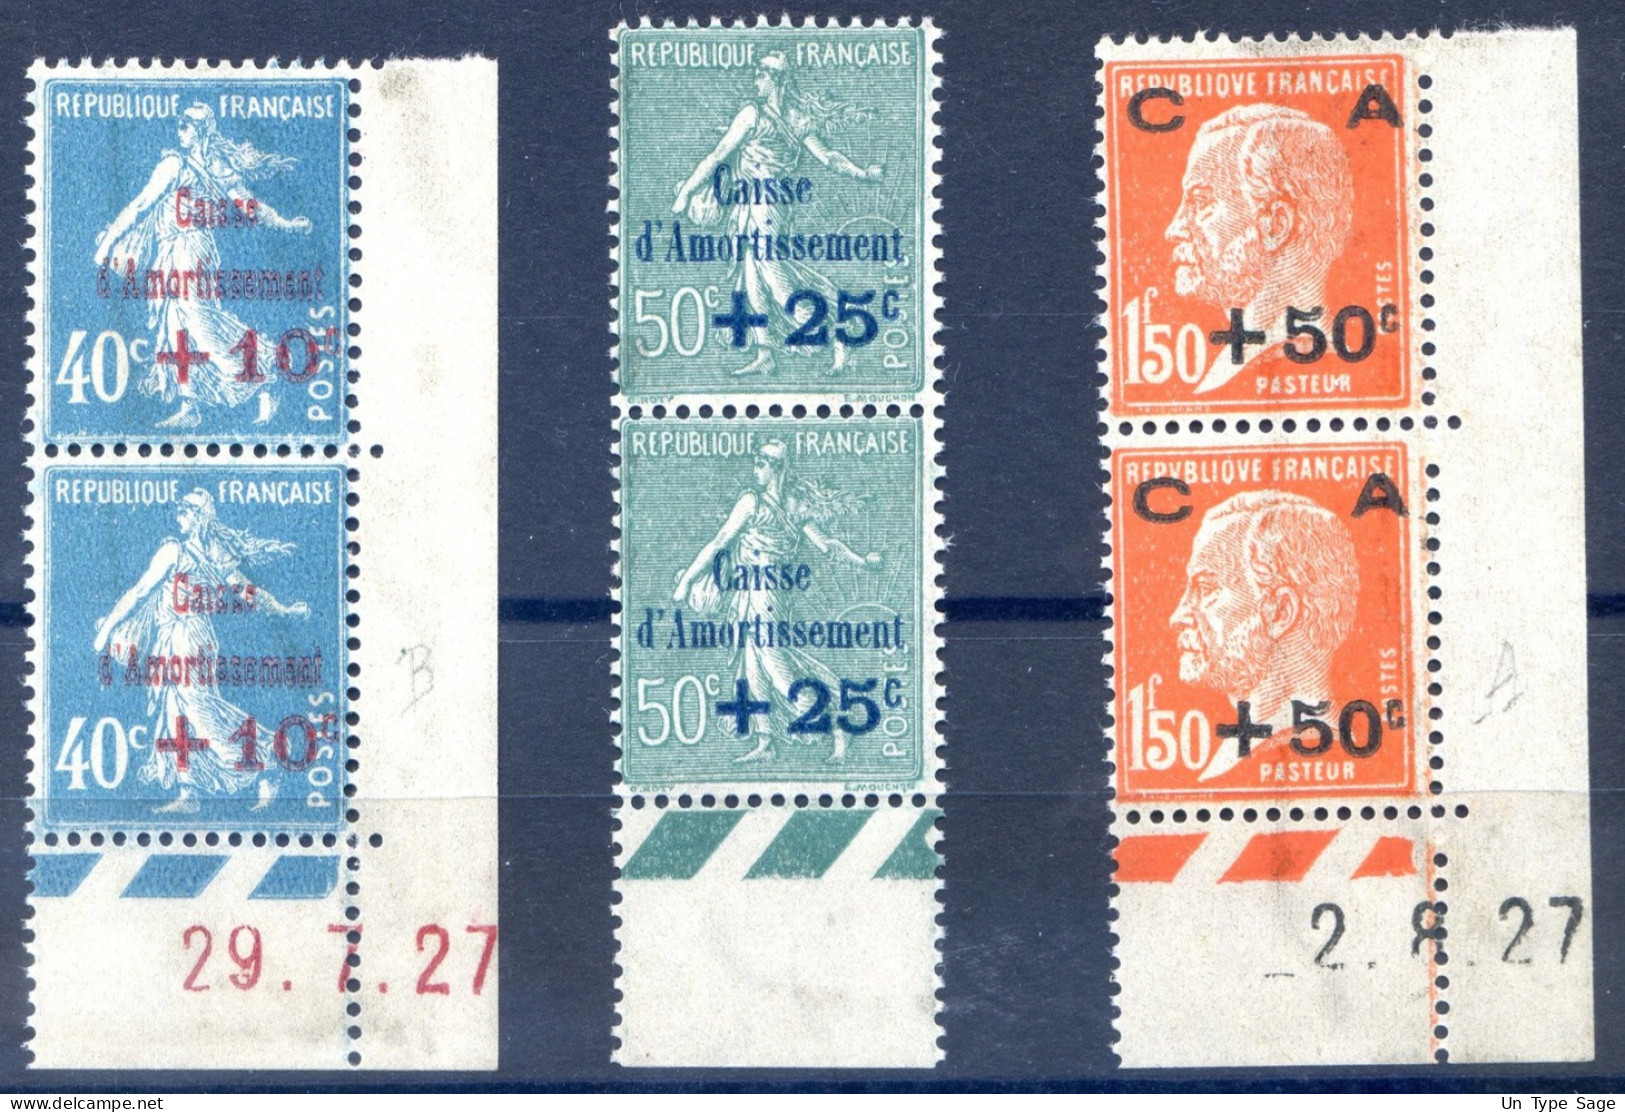 France N°253 à 255 Neuf** - Caisse D'amortissement - Paire Bord De Feuille - Cote +550€ - (F564) - Unused Stamps